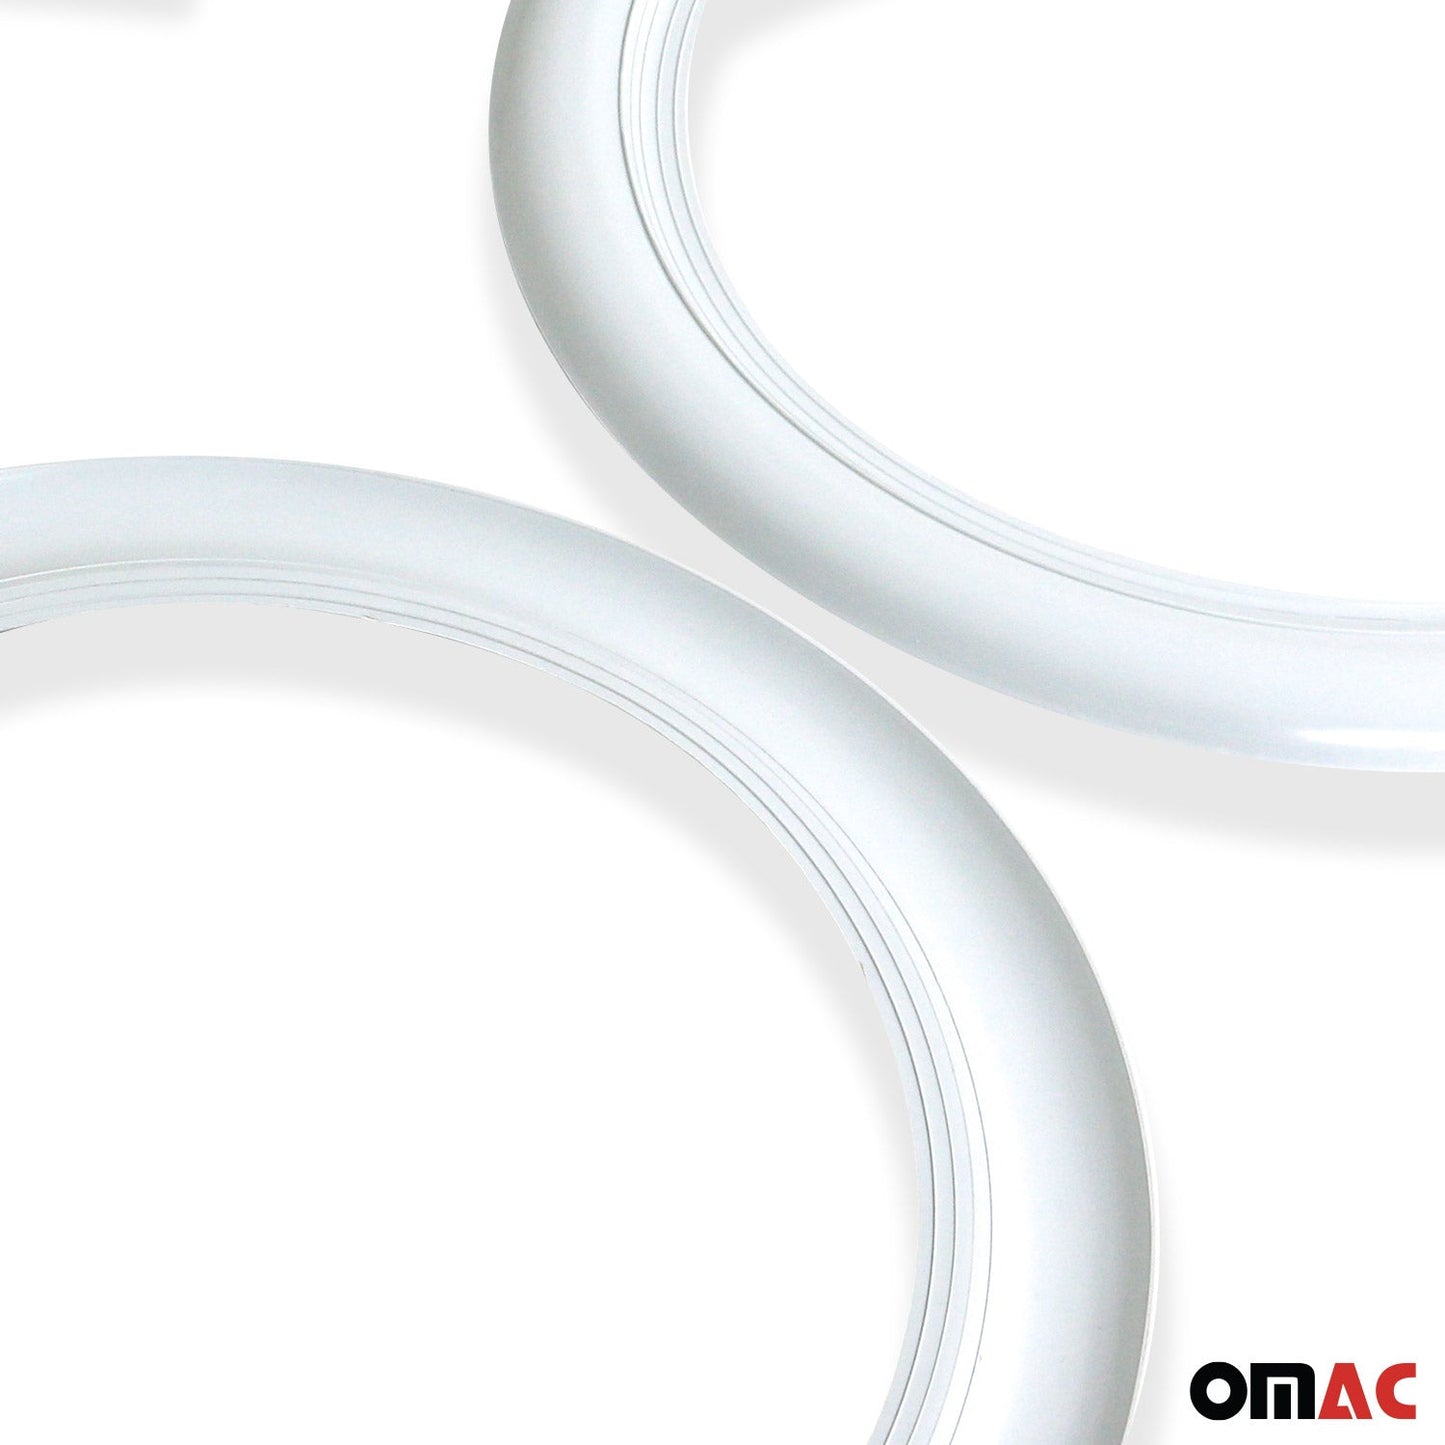 OMAC 15" Rims Portawalls White Wall Tire Insert Trim Sidewall Set of 4 Pcs 96TW015W